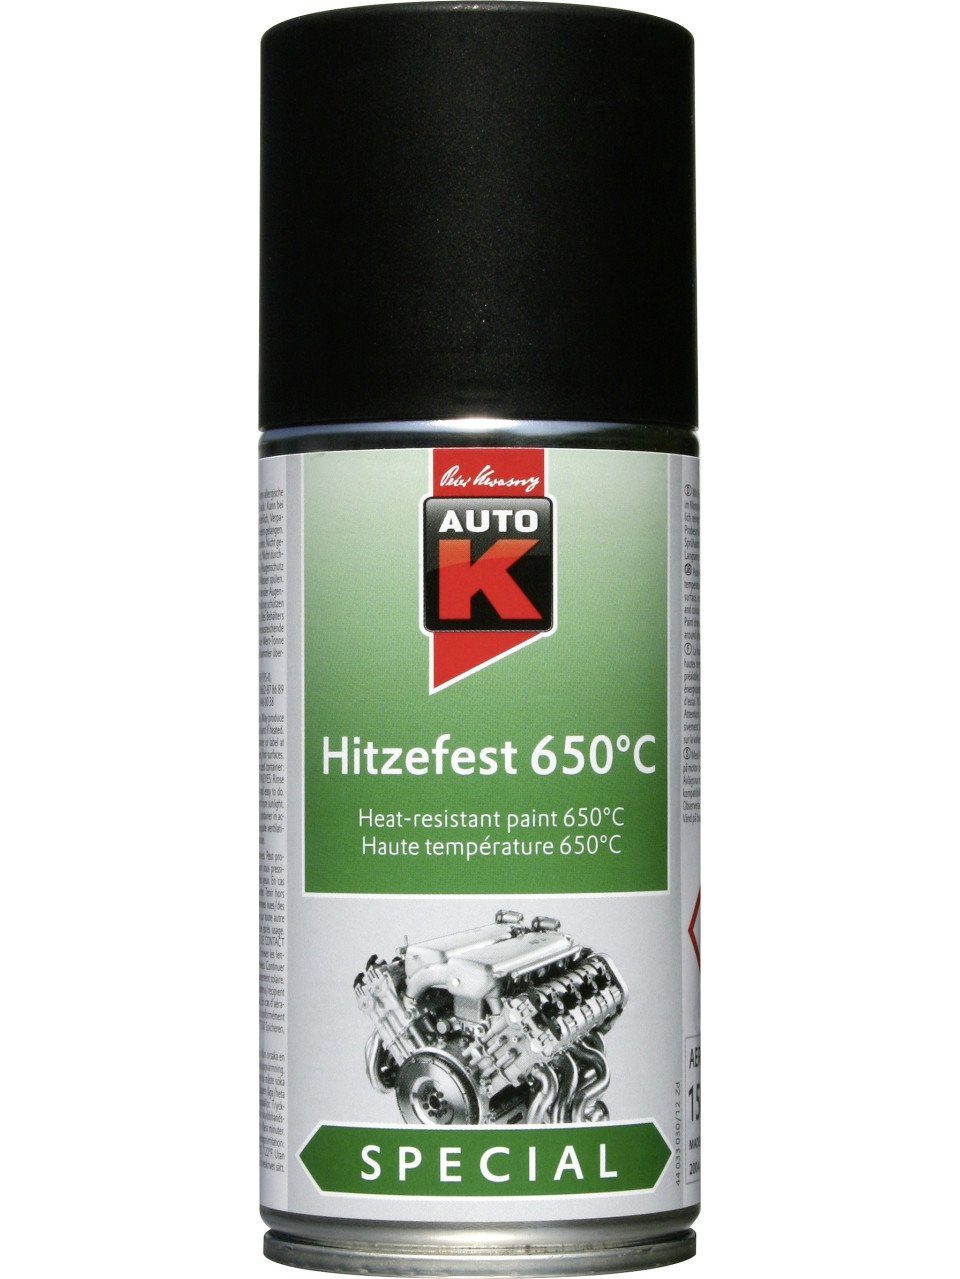 Auto-K Lack Auto-K Lack Hitzefest 650°C Special schwarz 150ml